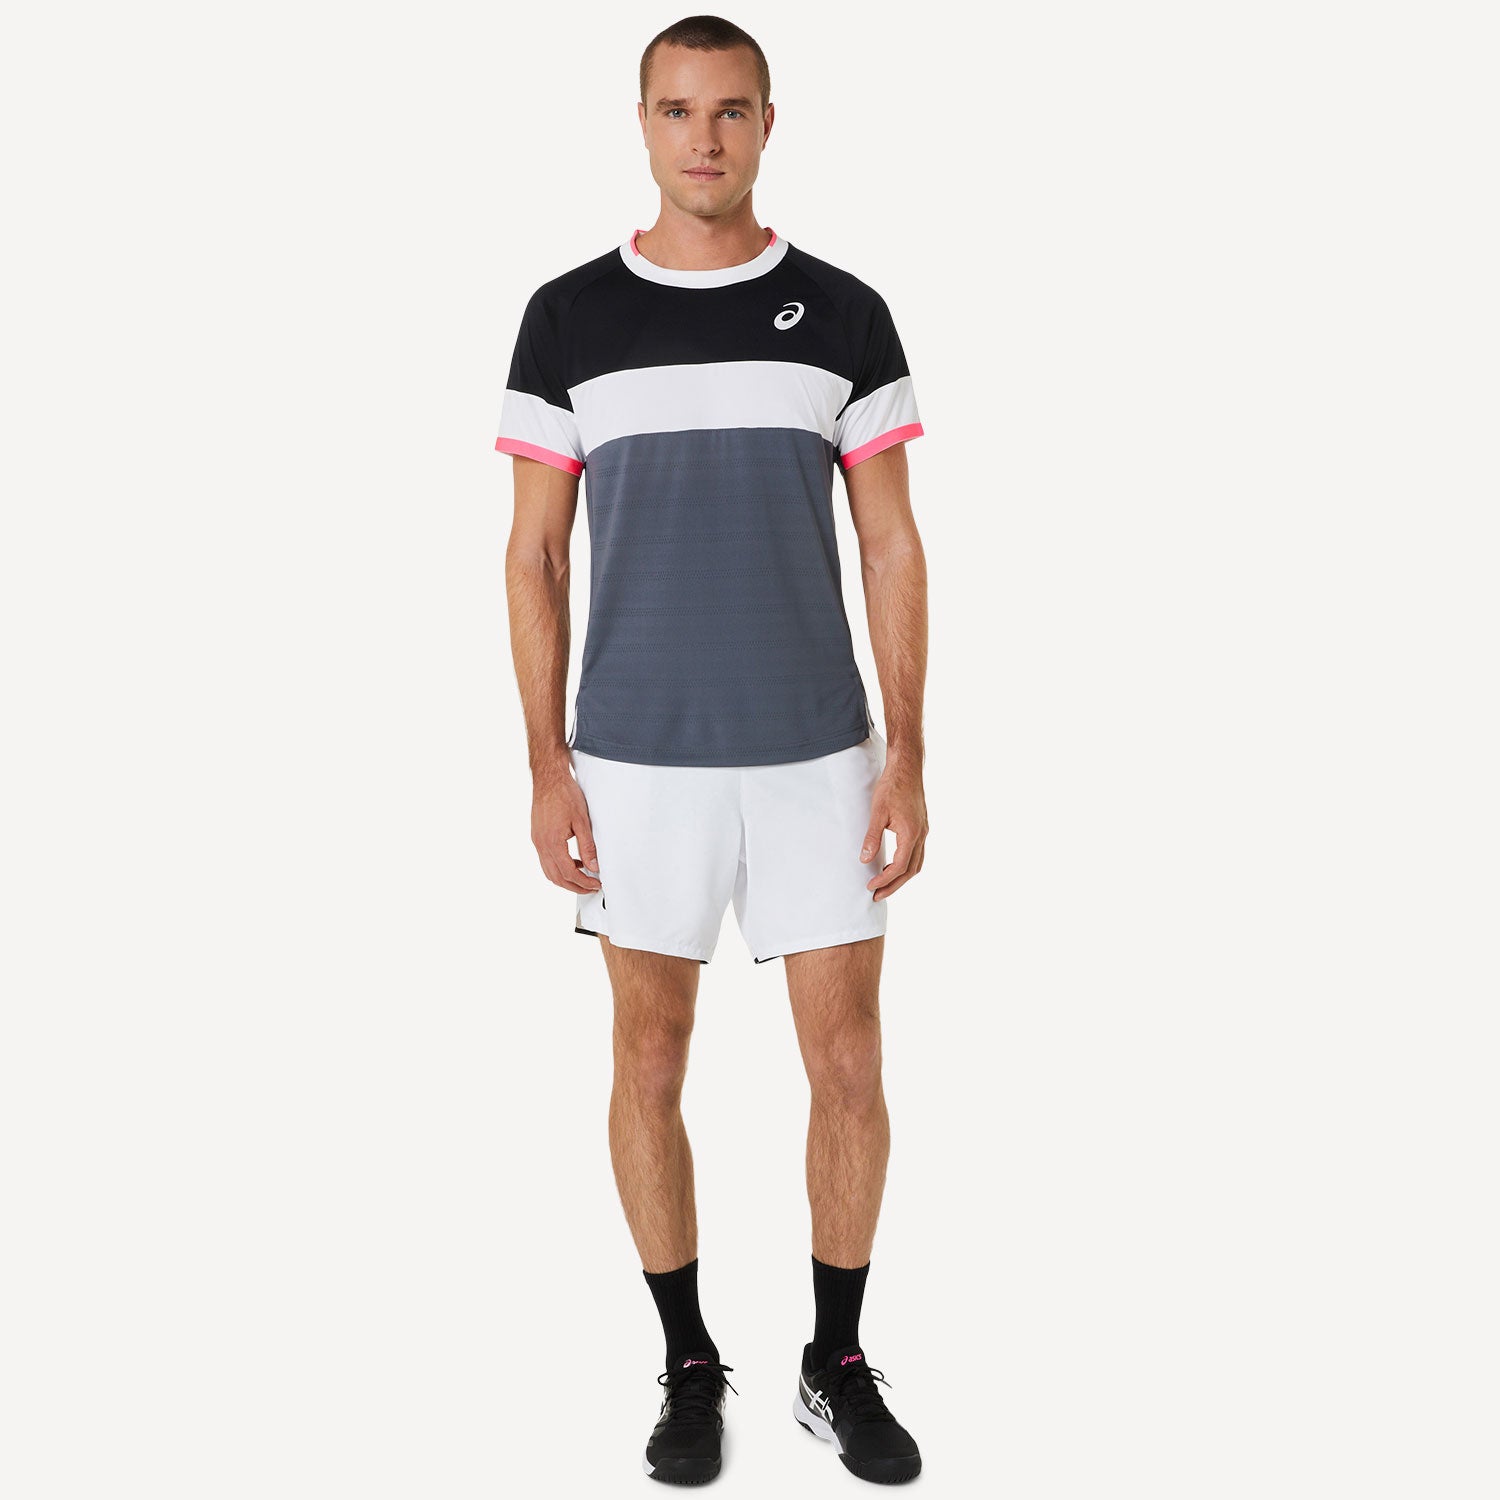 ASICS Match Men's Tennis Shirt Black (6)